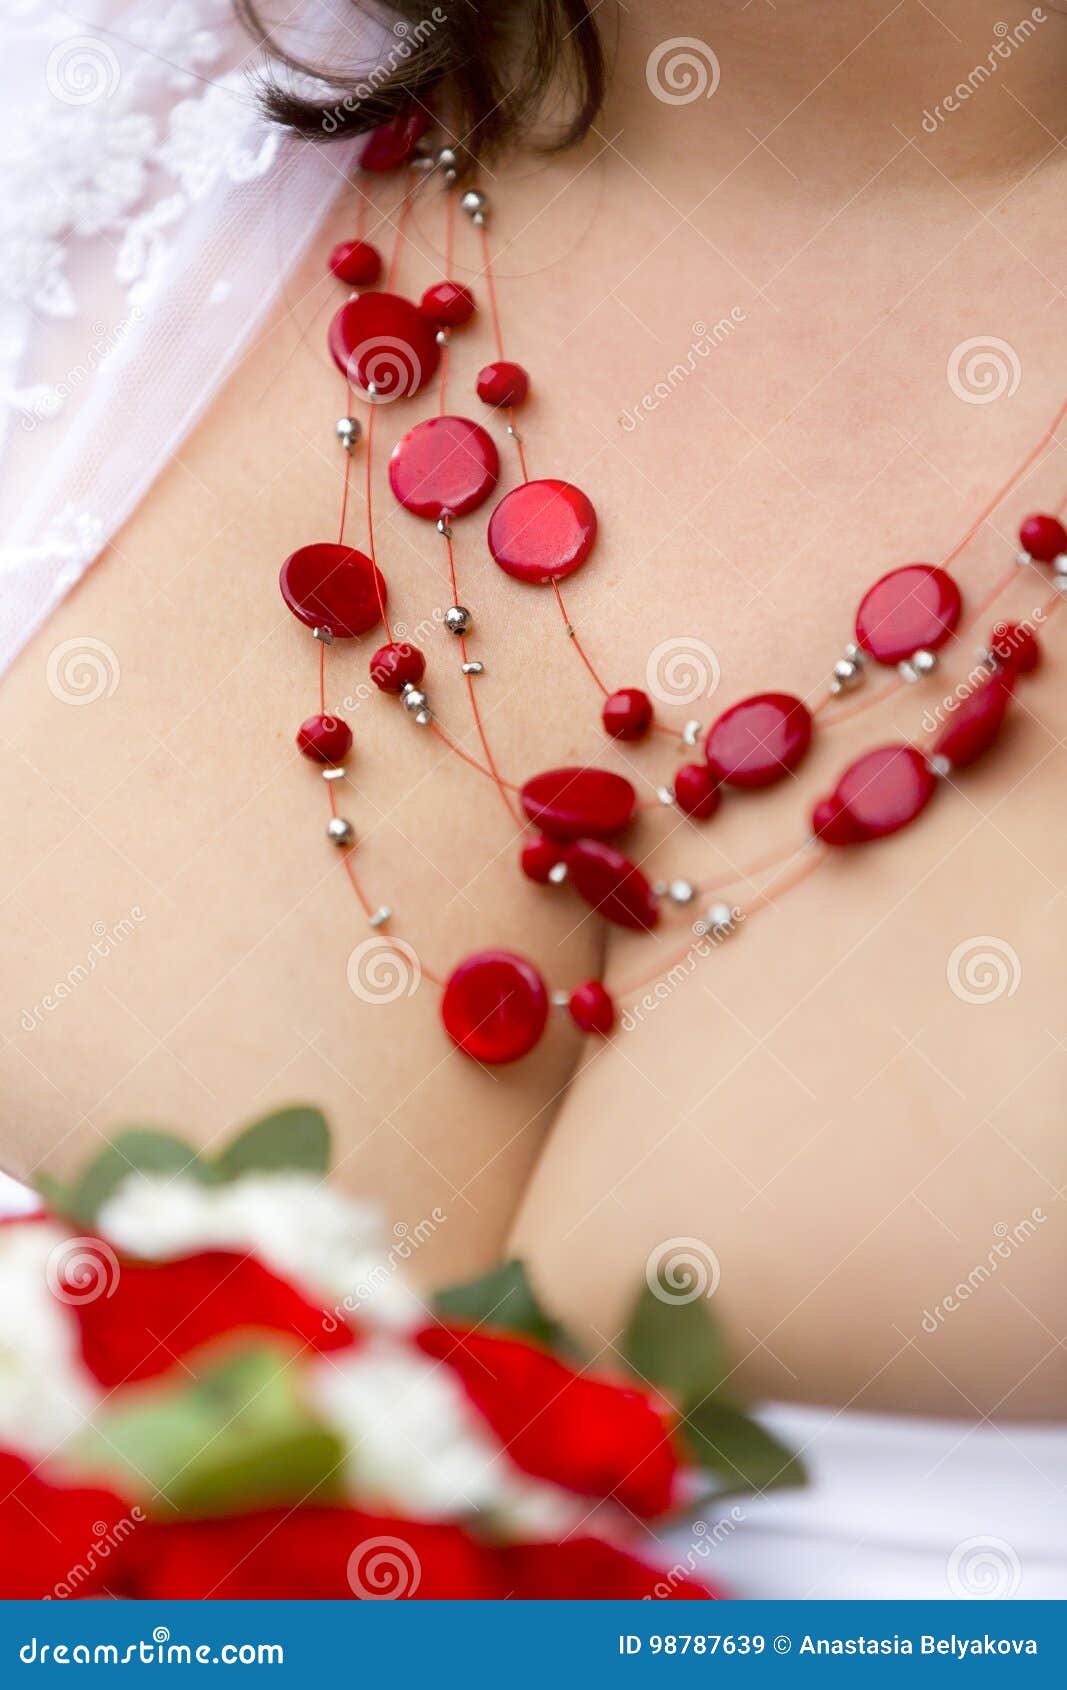 Collar Rojo Con Las Gotas De Plata En El Pecho La Mujer Imagen de archivo - Imagen de blanco, plata: 98787639